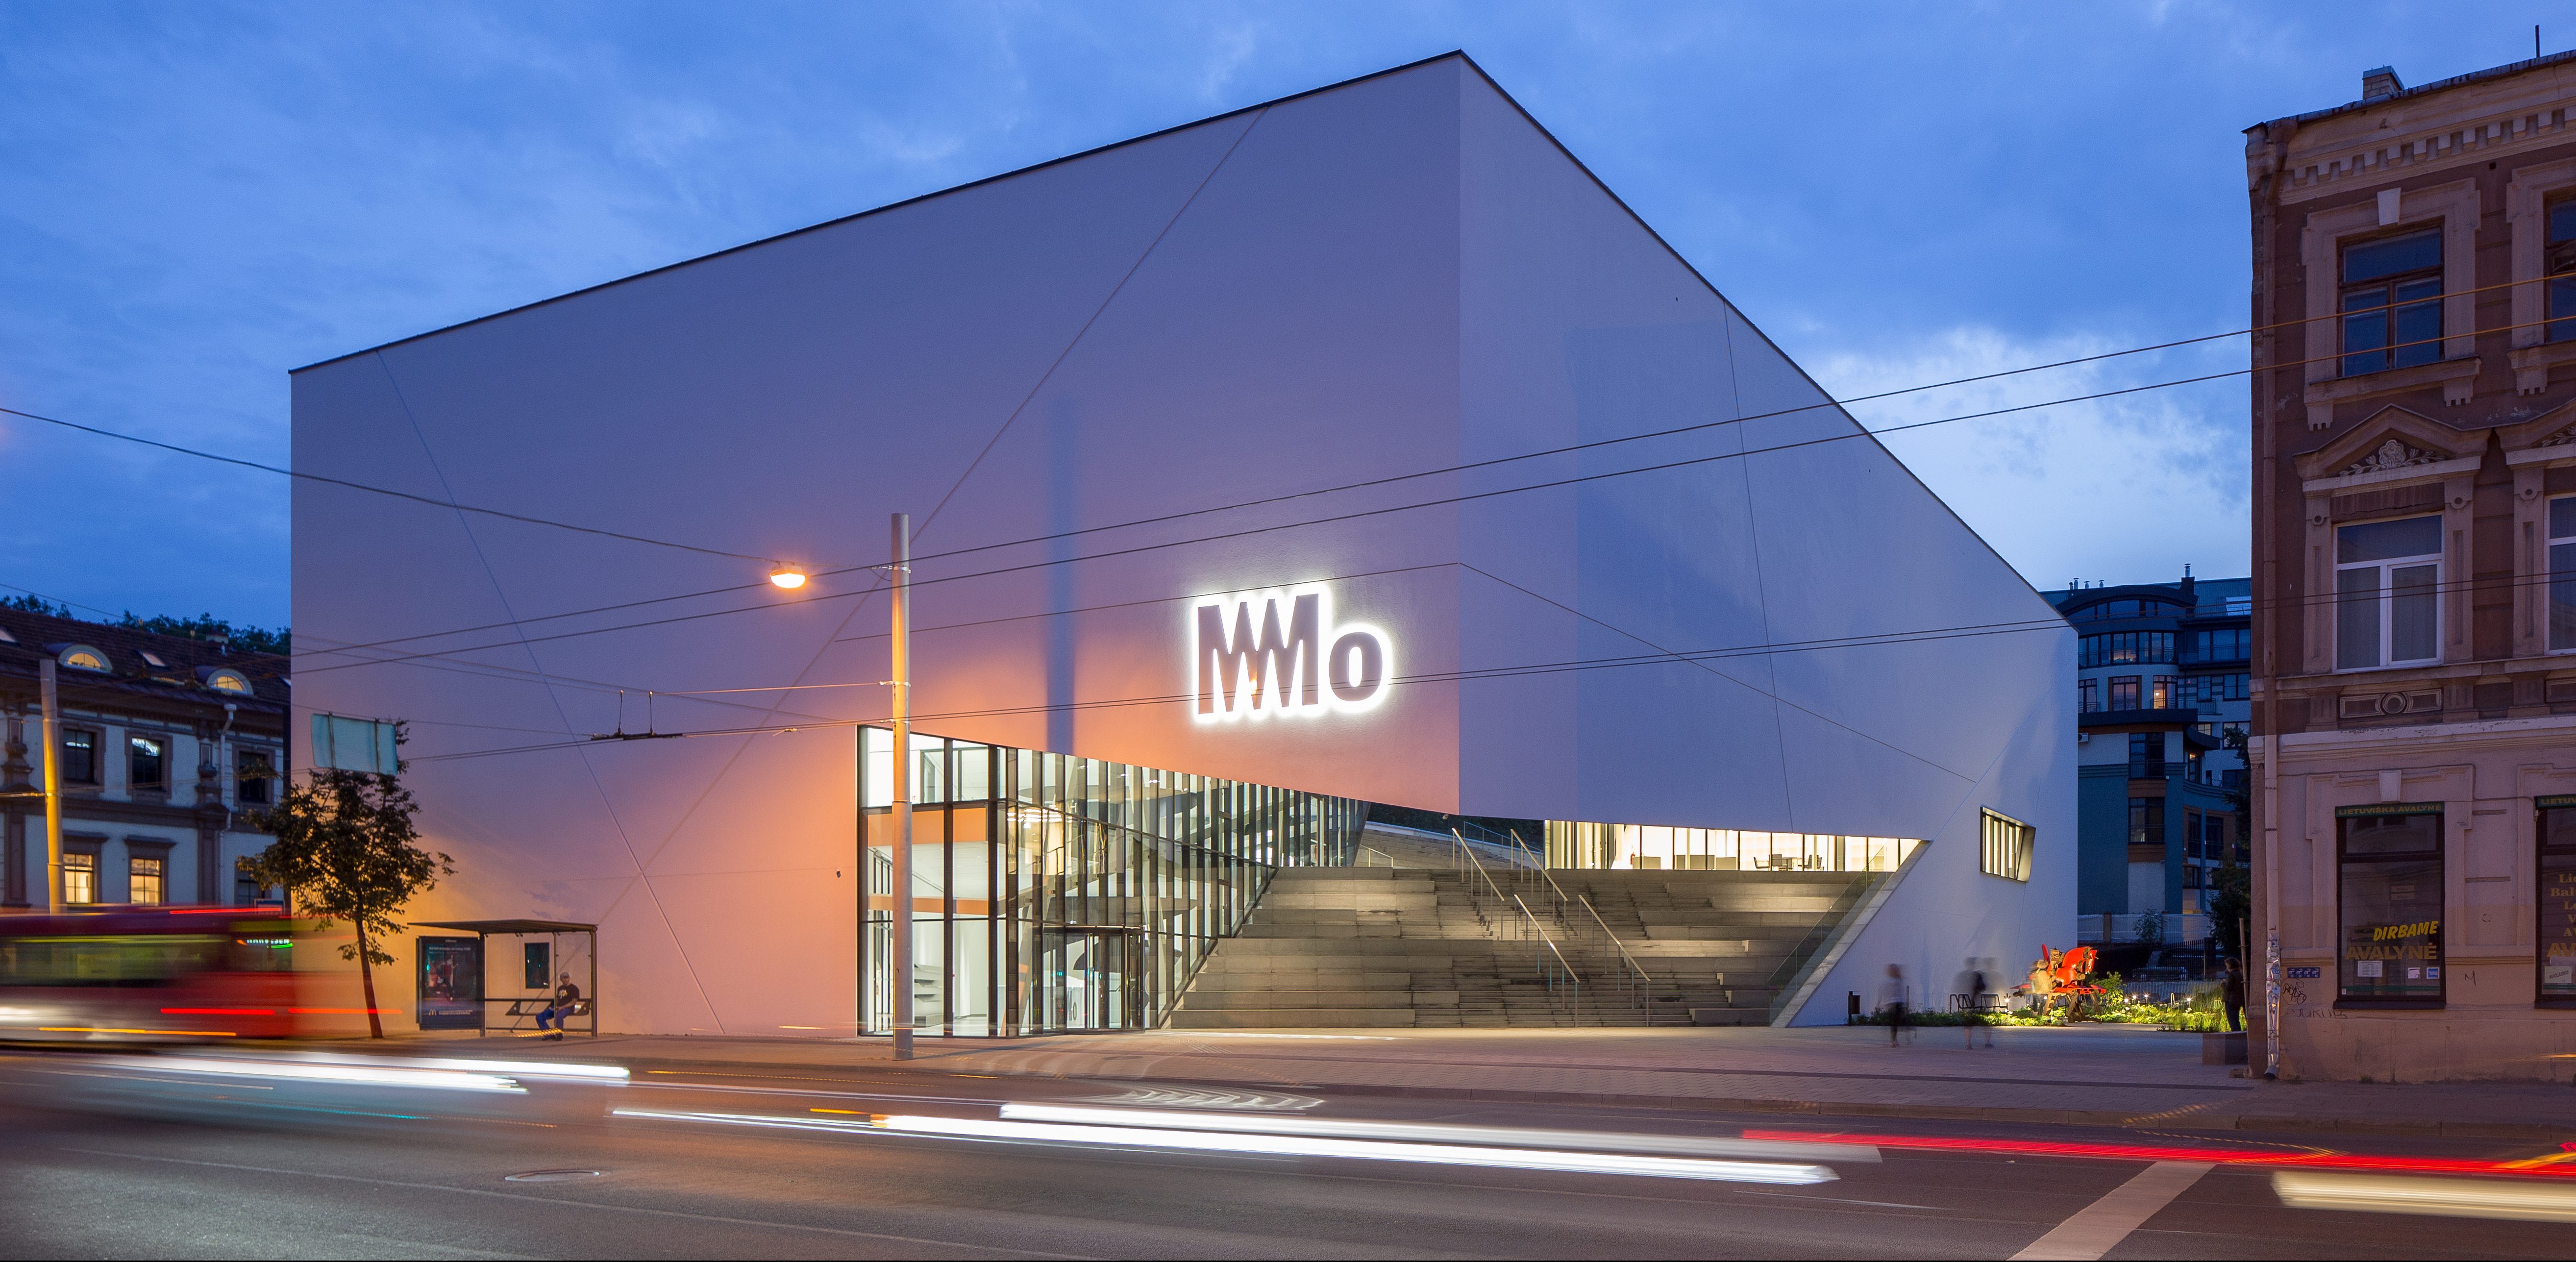 Baigta išskirtiniais architektūriniais sprendimais garsėjančio «MO muziejaus» pastato statyba